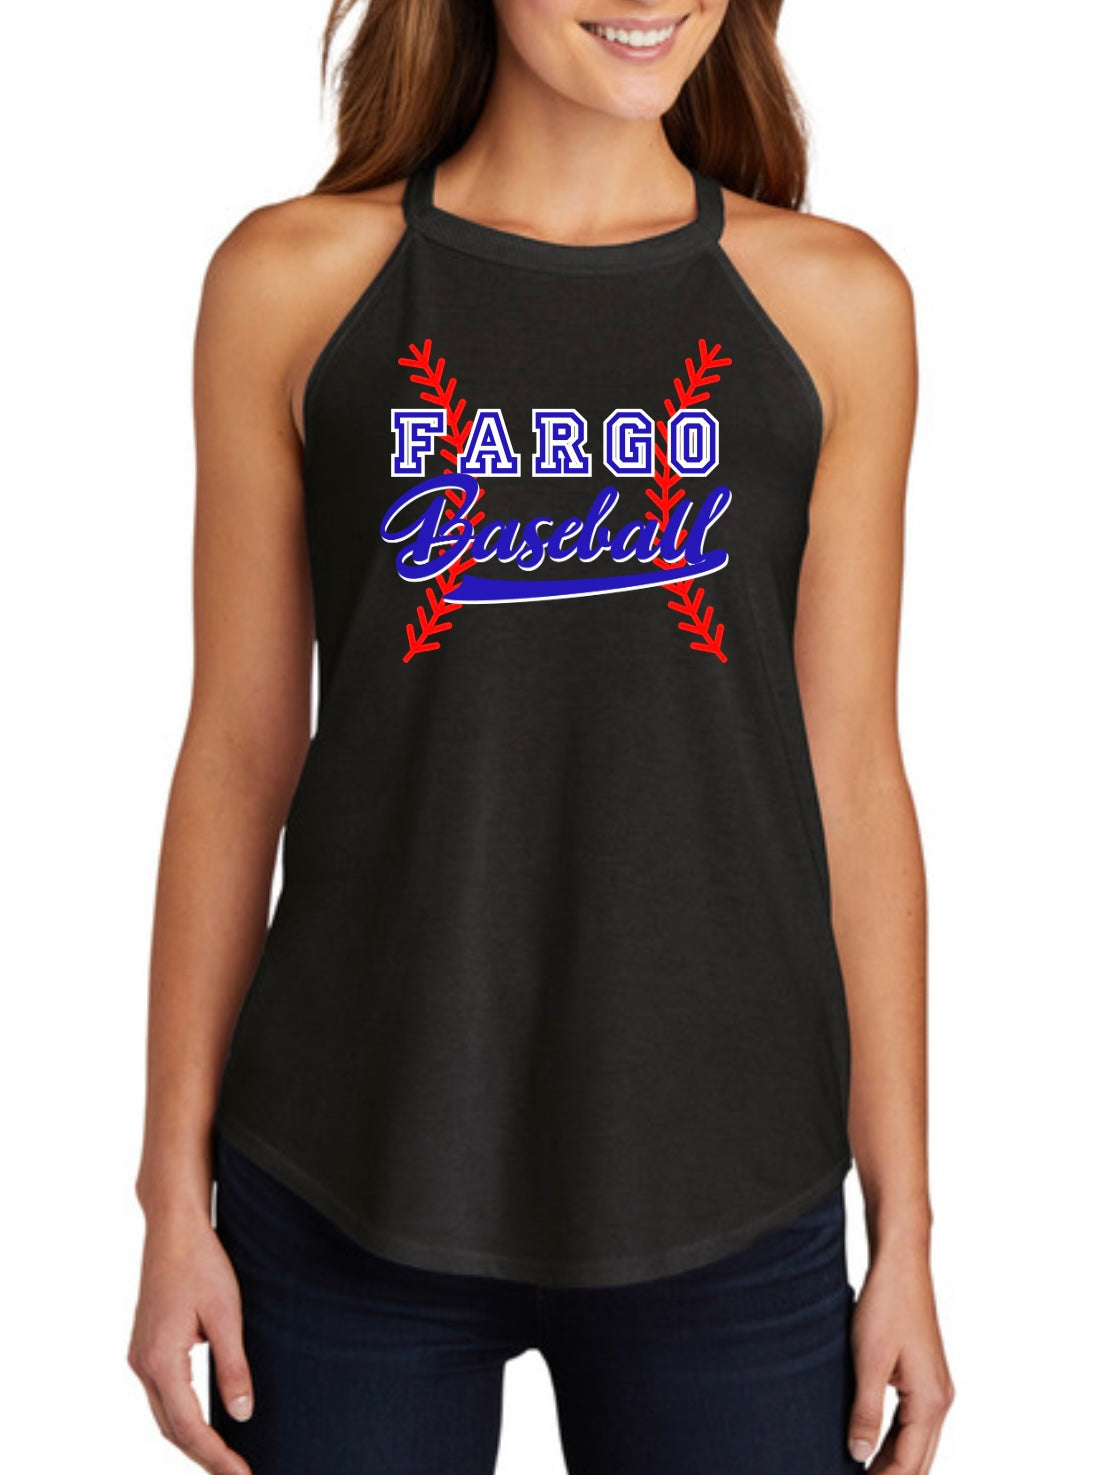 Fargo Baseball Rocker Tank